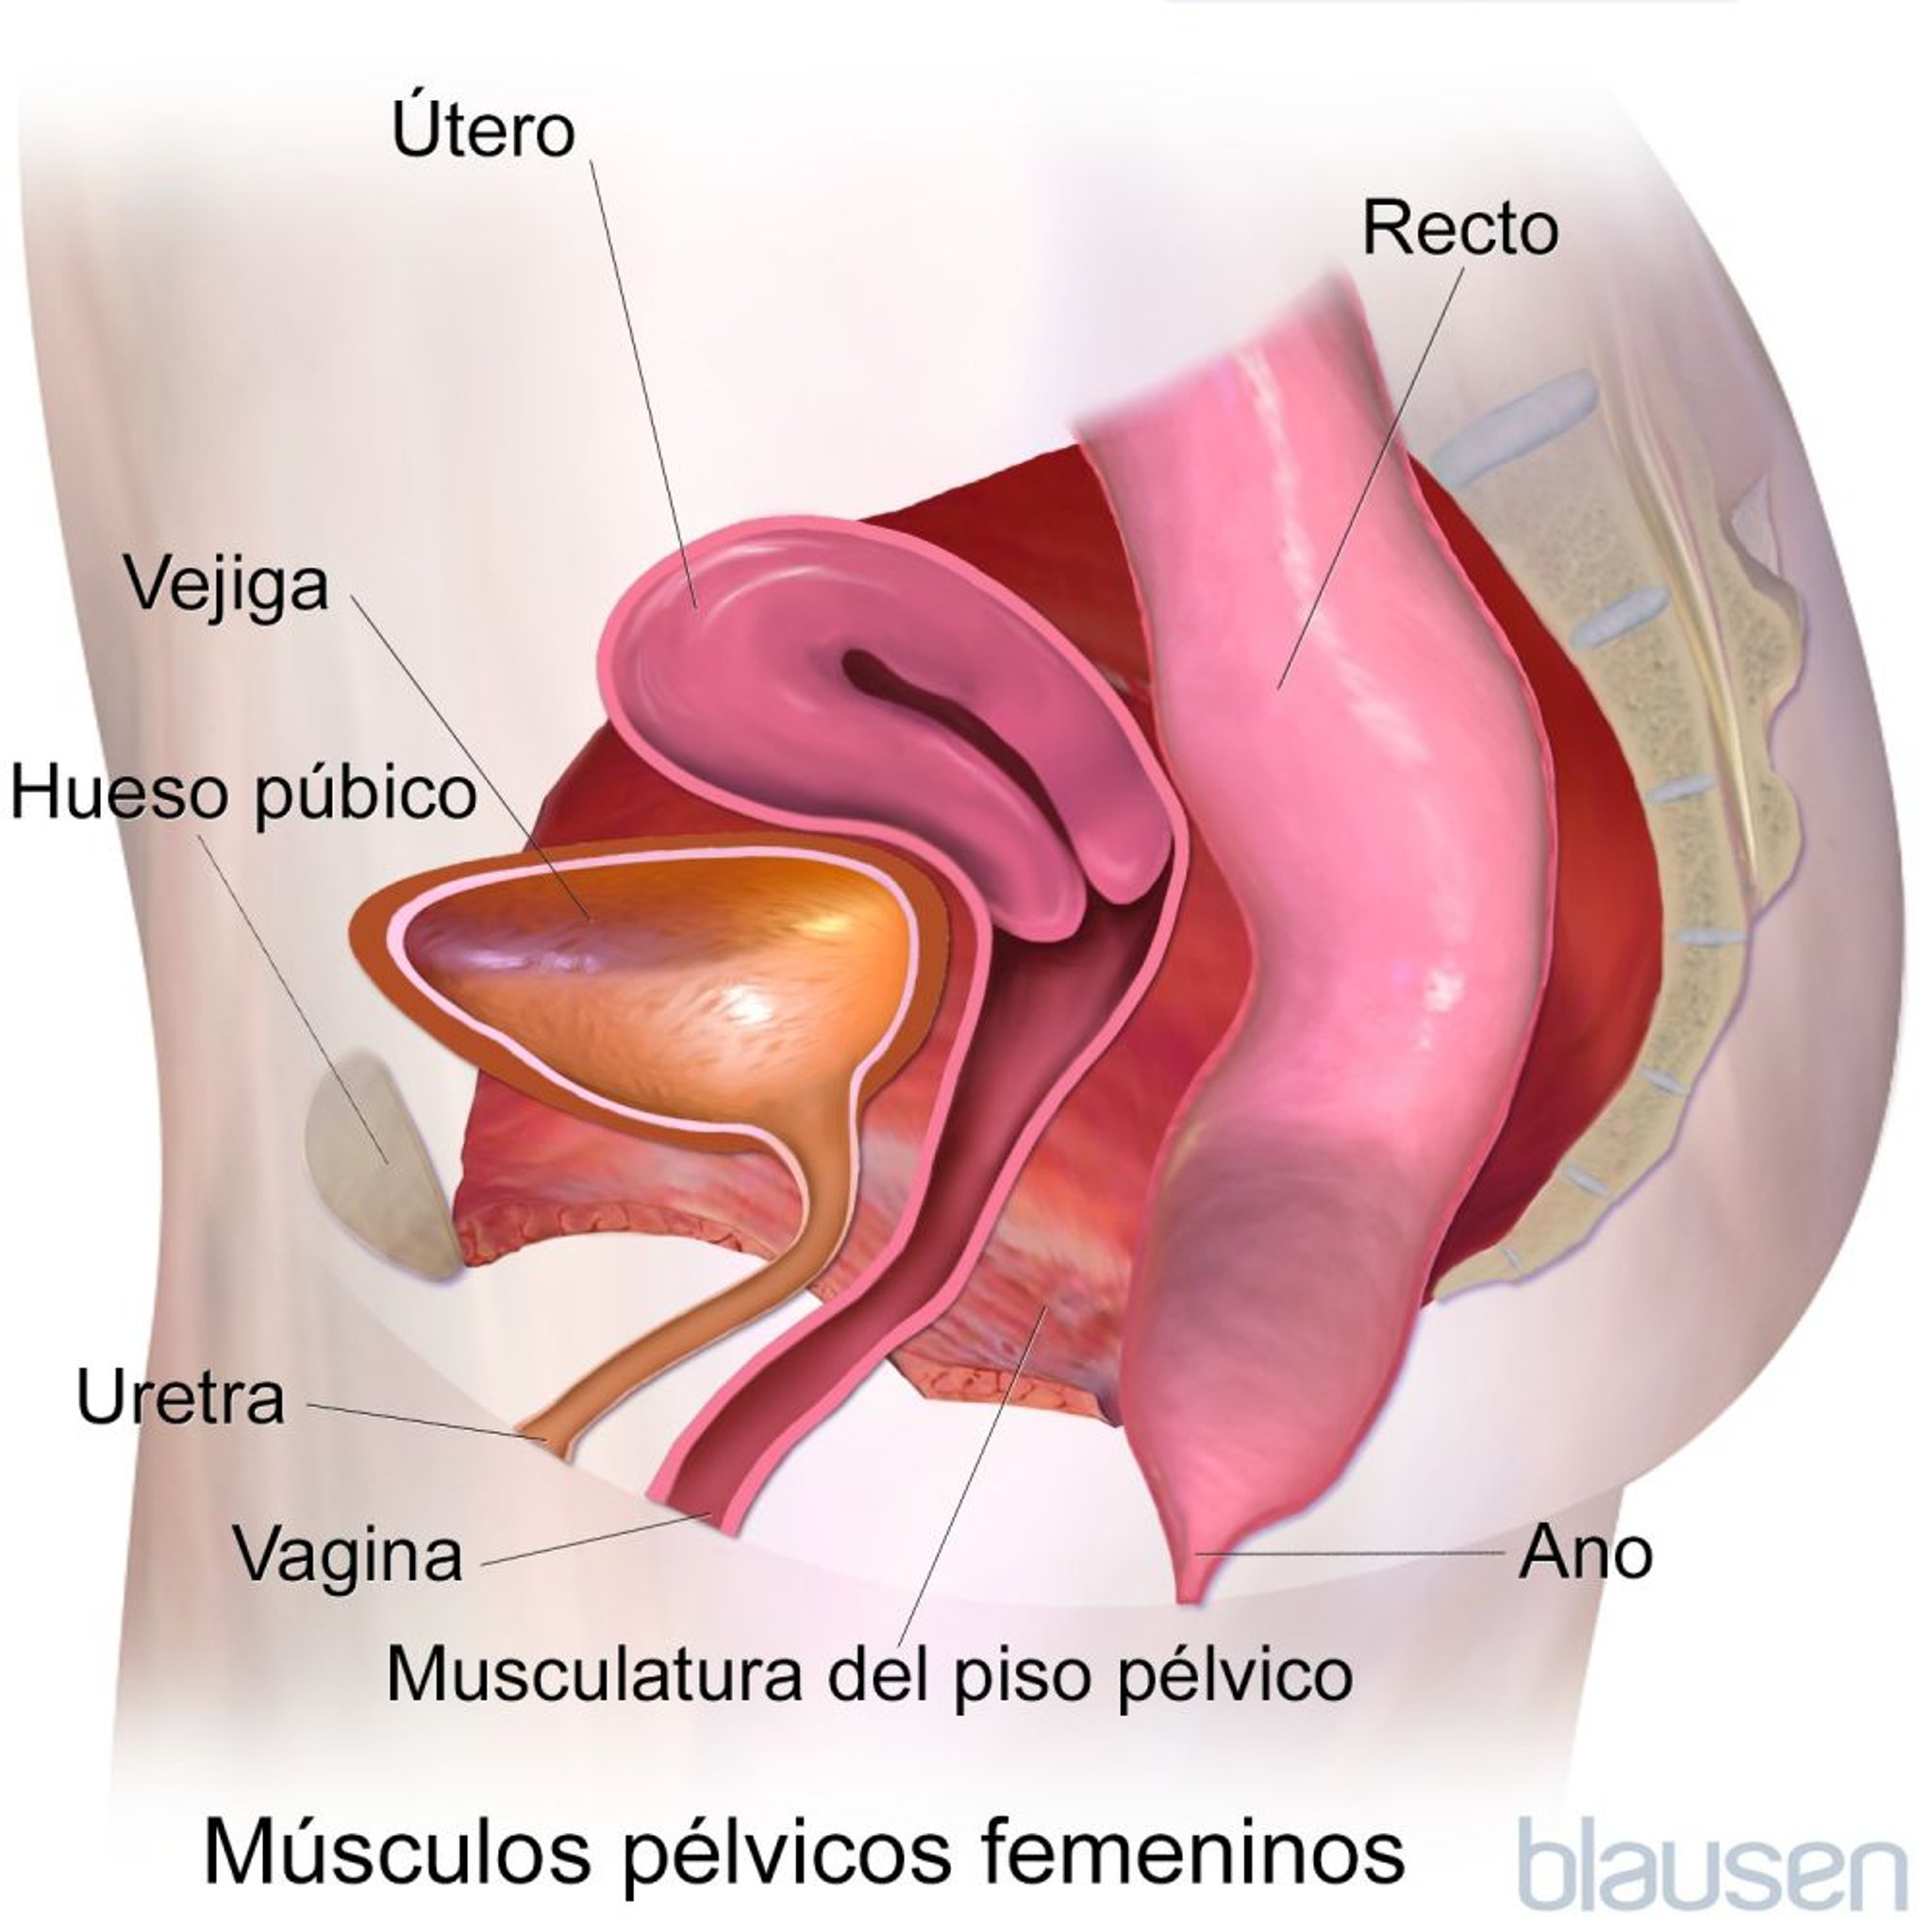 Músculos pélvicos femeninos (vista lateral)